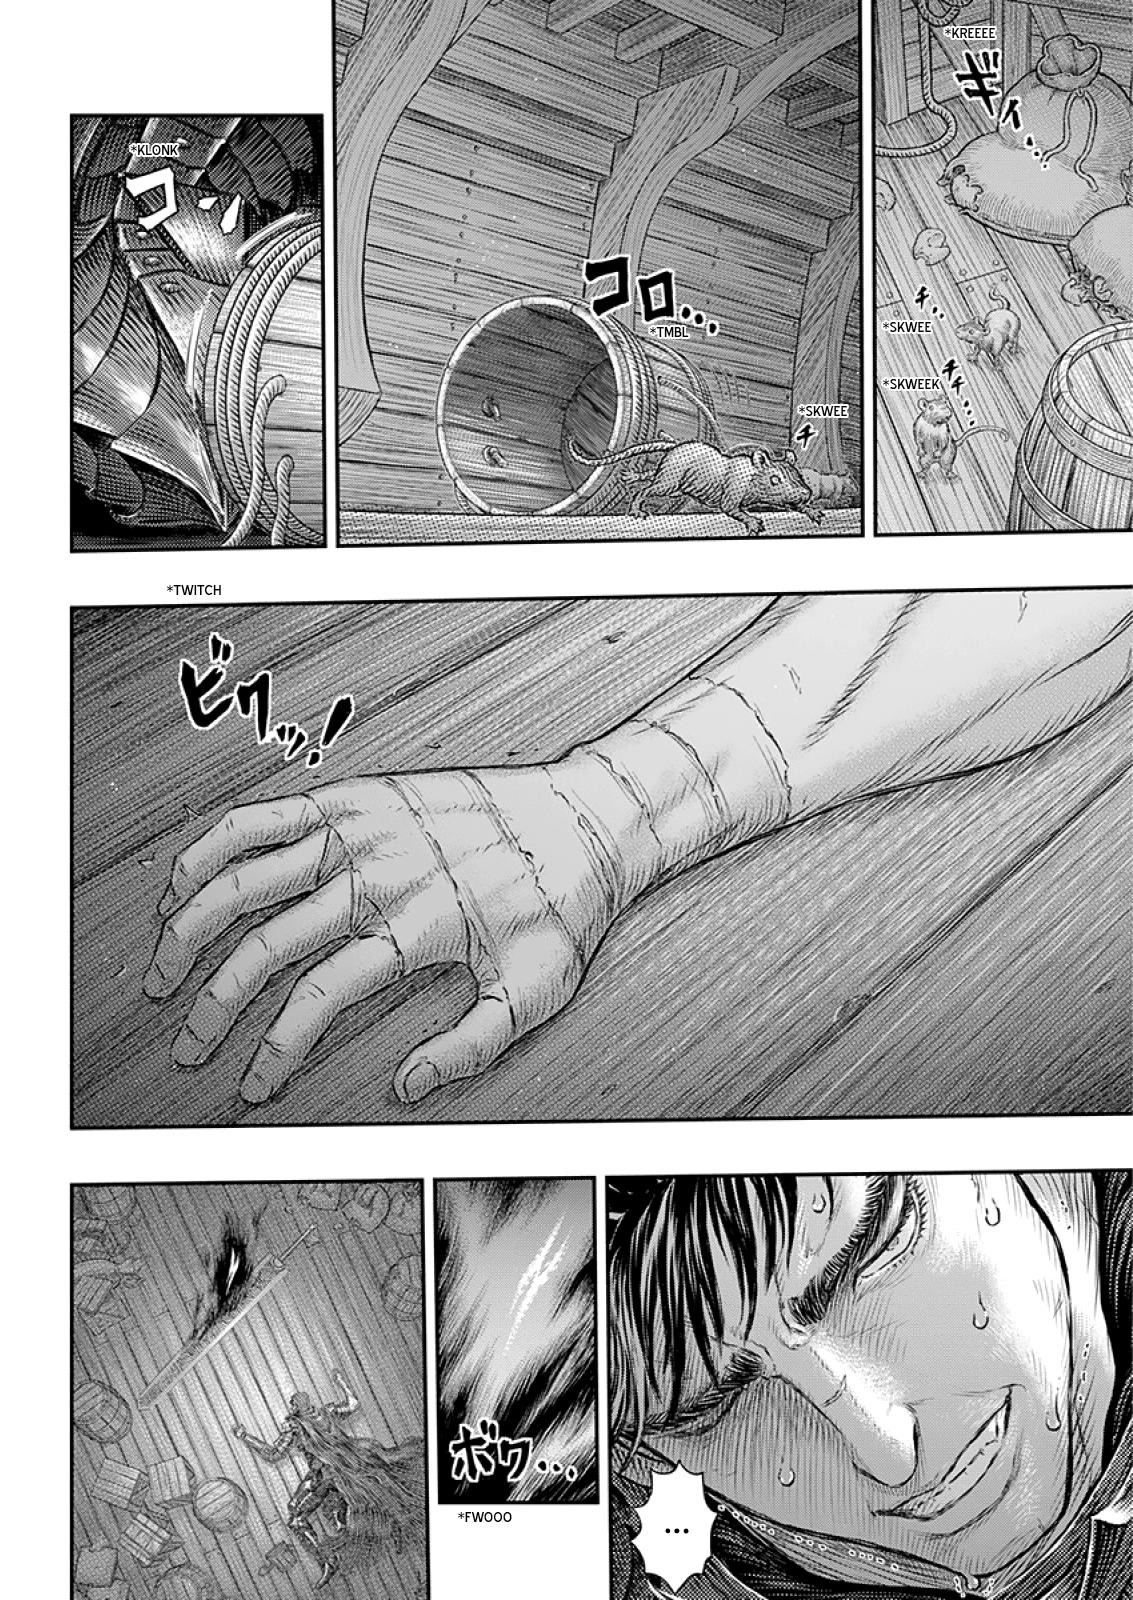 Berserk Manga Chapter 373 image 08